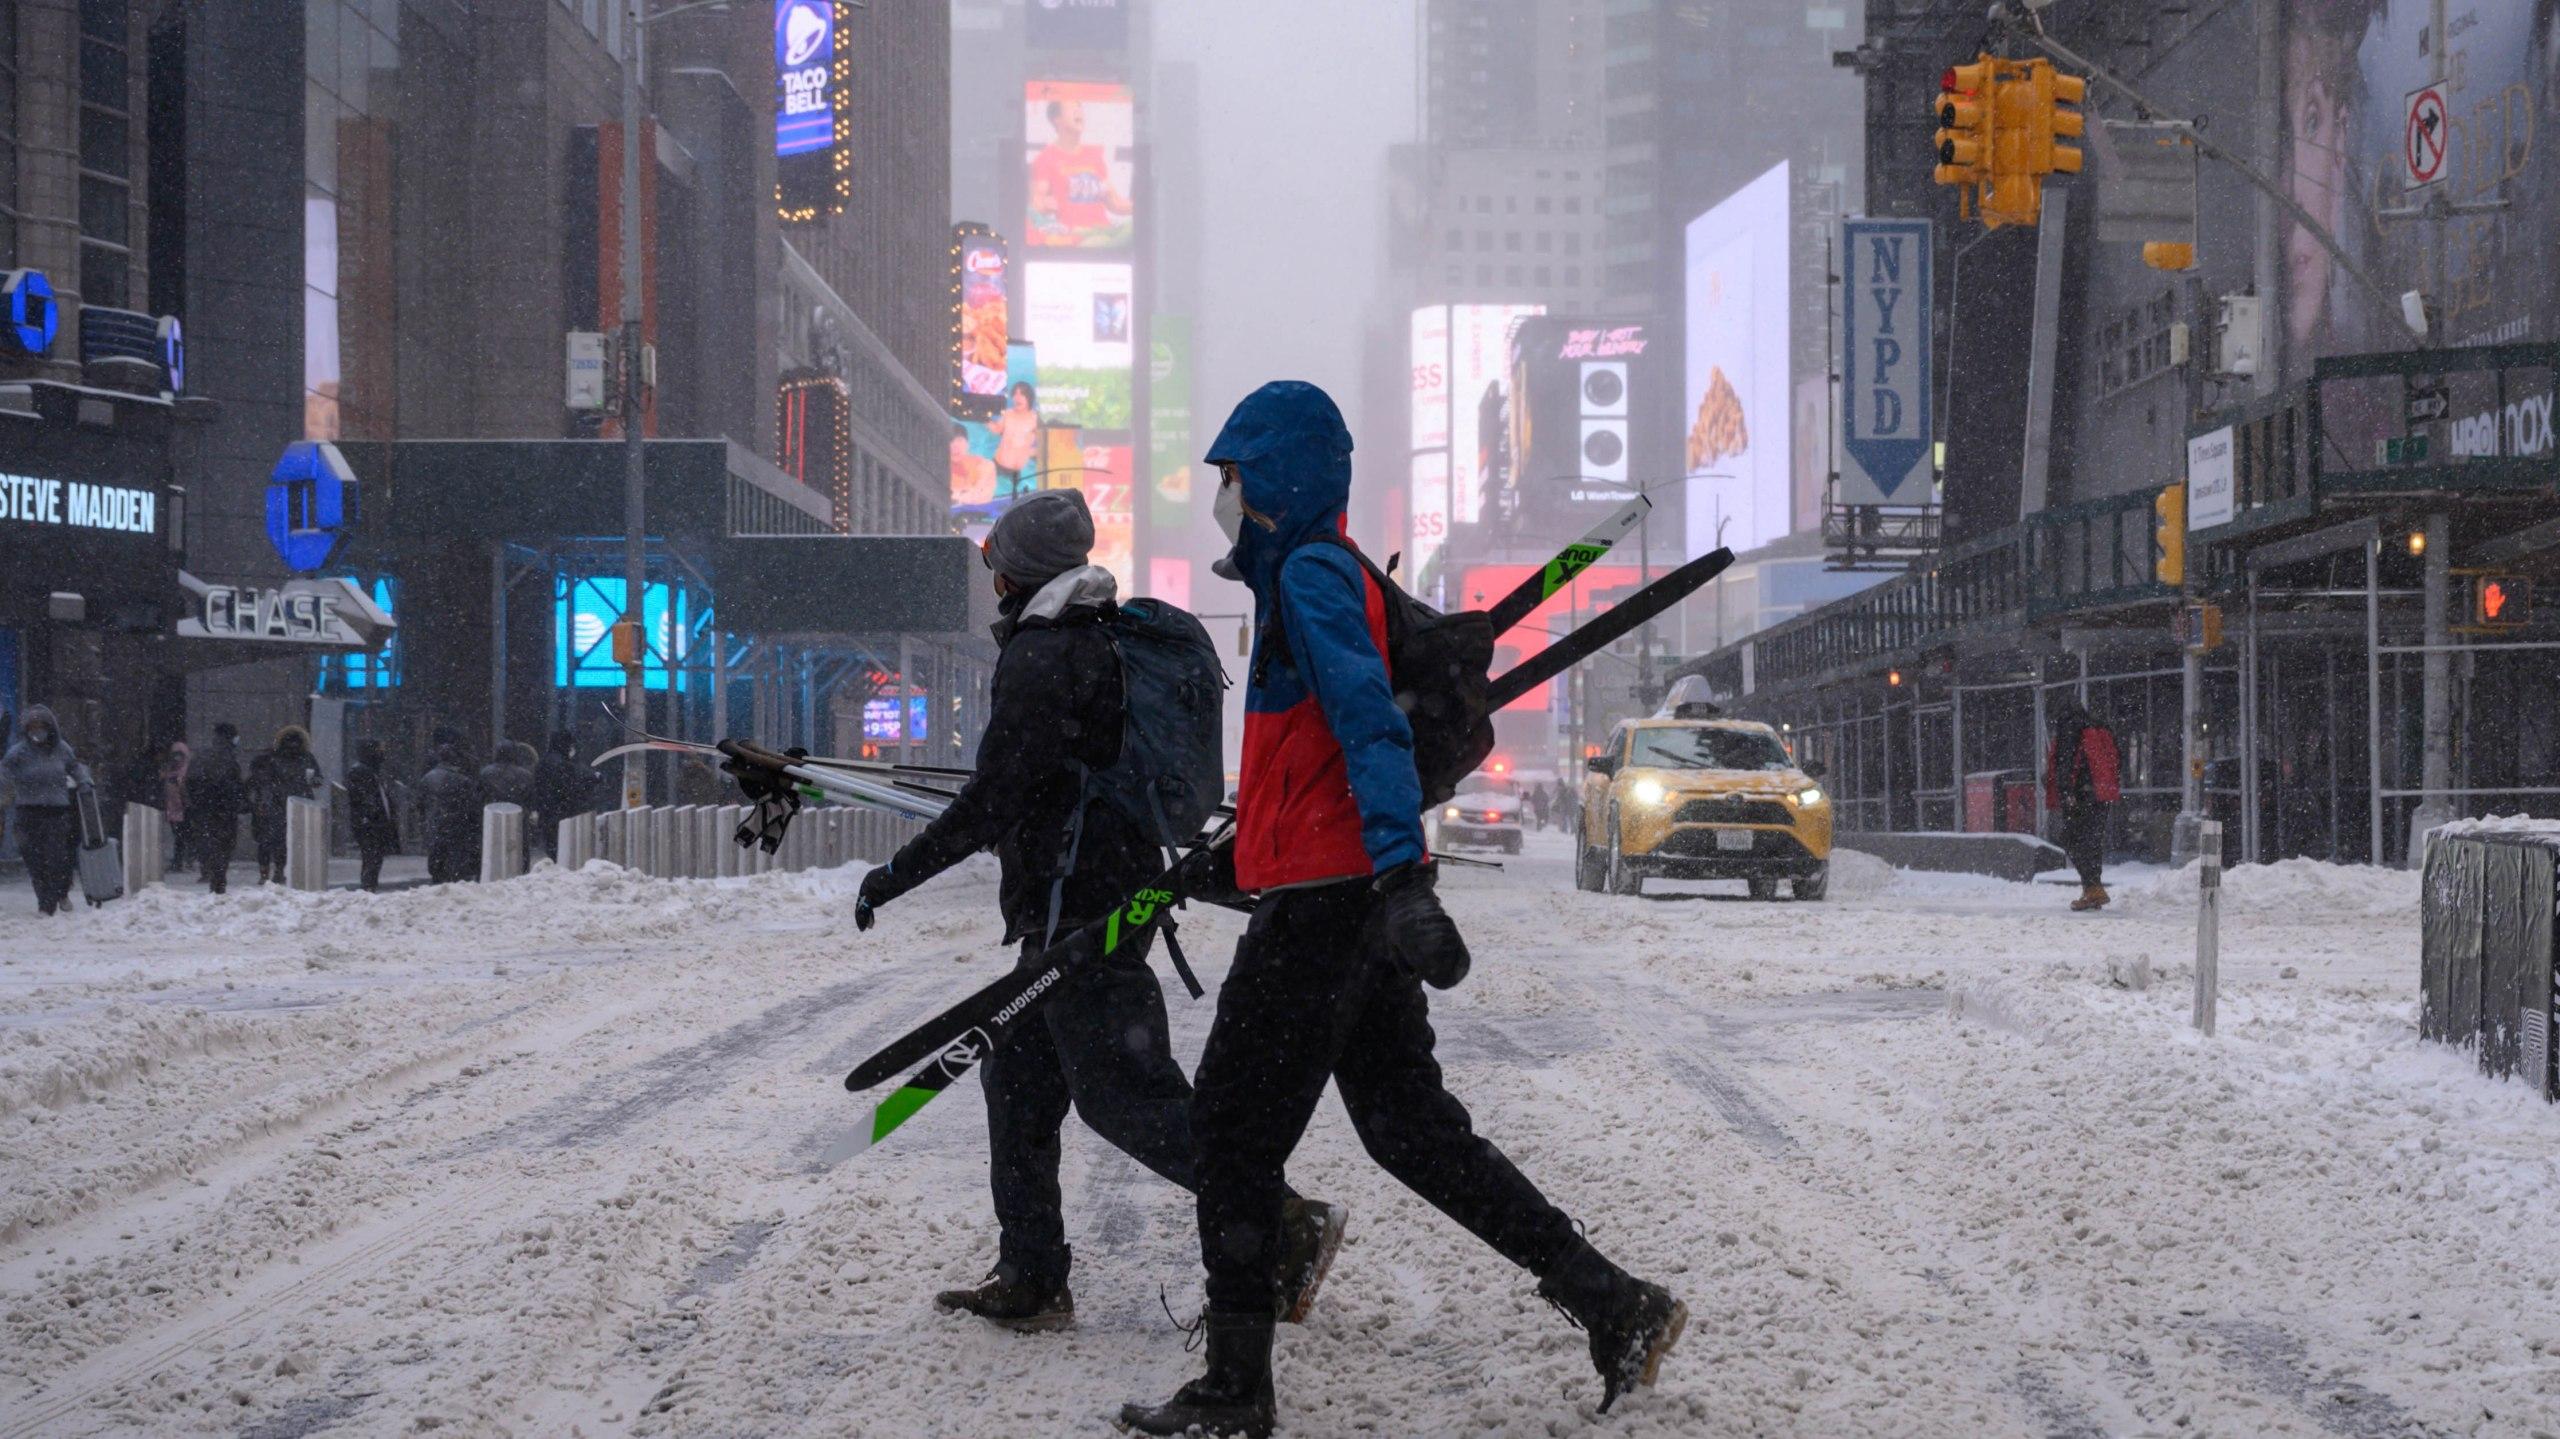 Noaa Releases New York Winter Weather Outlook